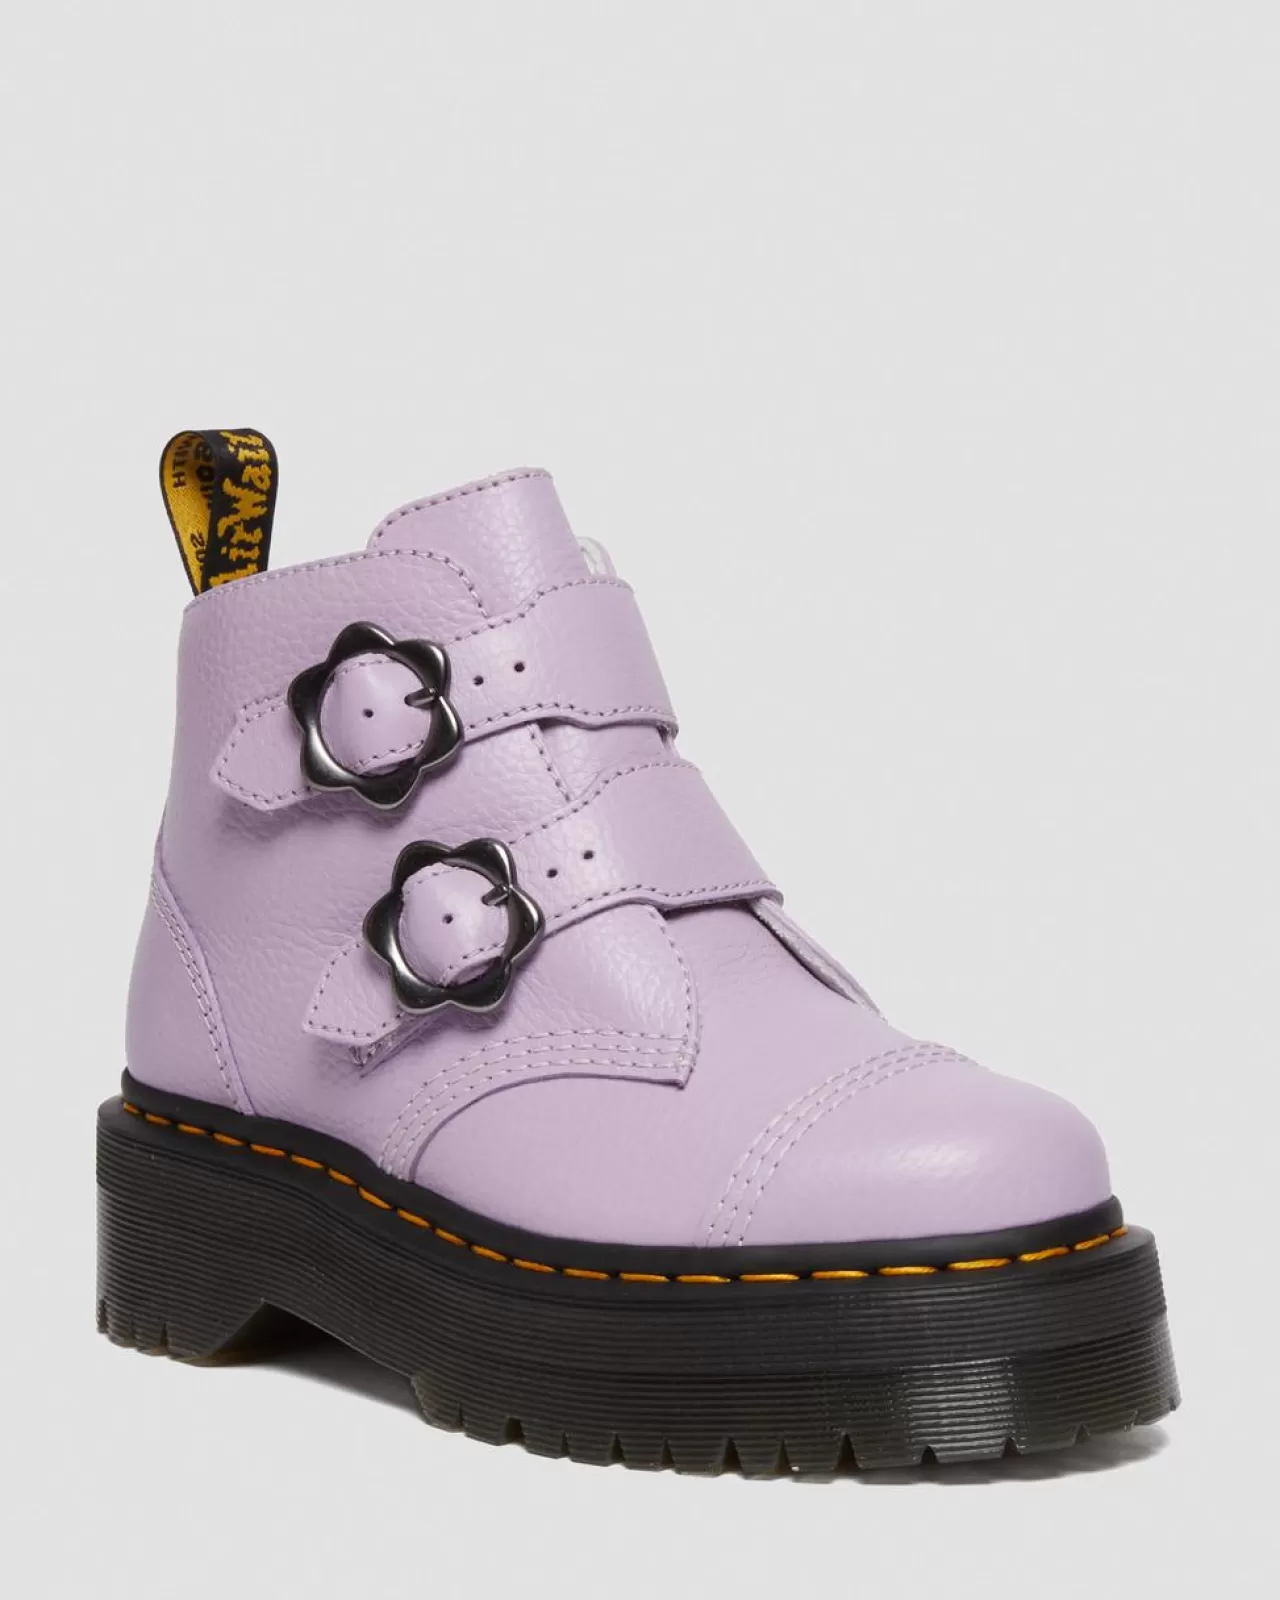 Sale | Platform Boots^Dr. Martens Devon Flower Buckle Leather Platform Boots Lilac — Milled Nappa